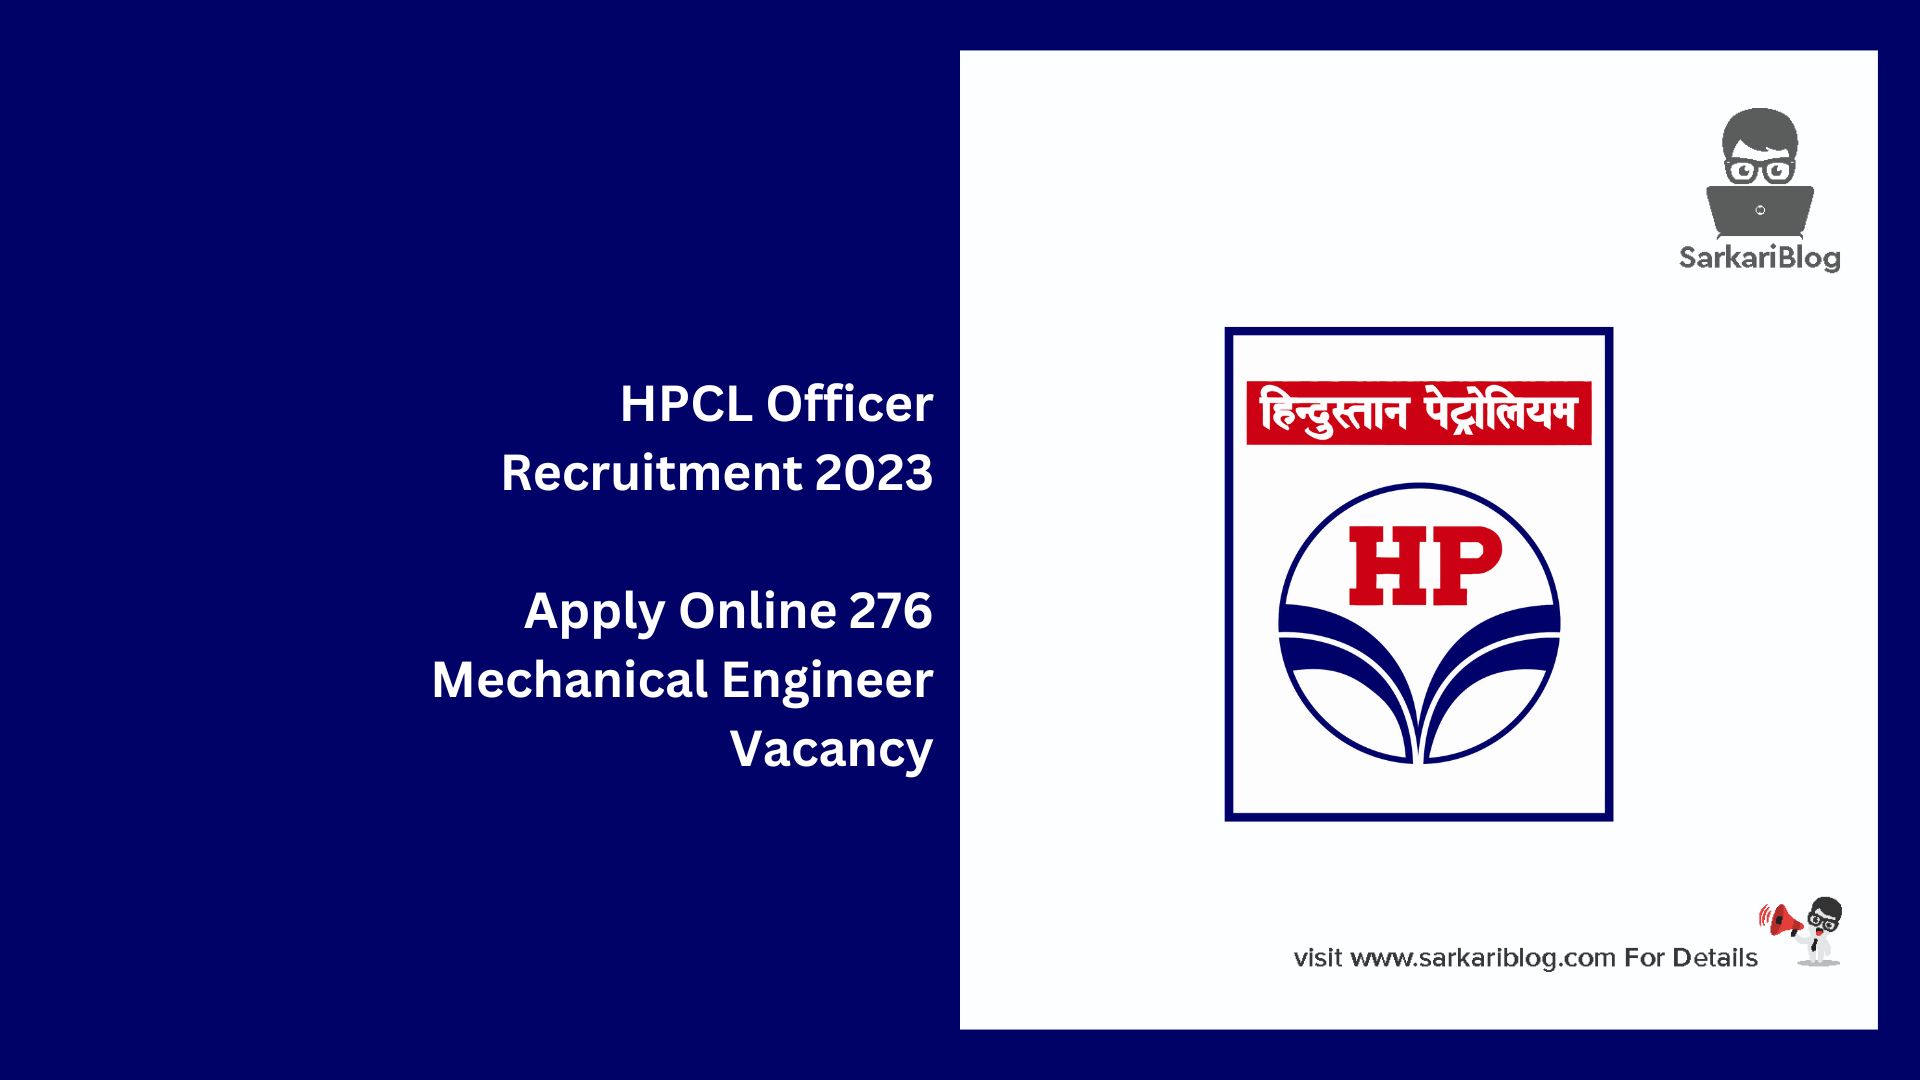 HPCL Officer Recruitment 2023